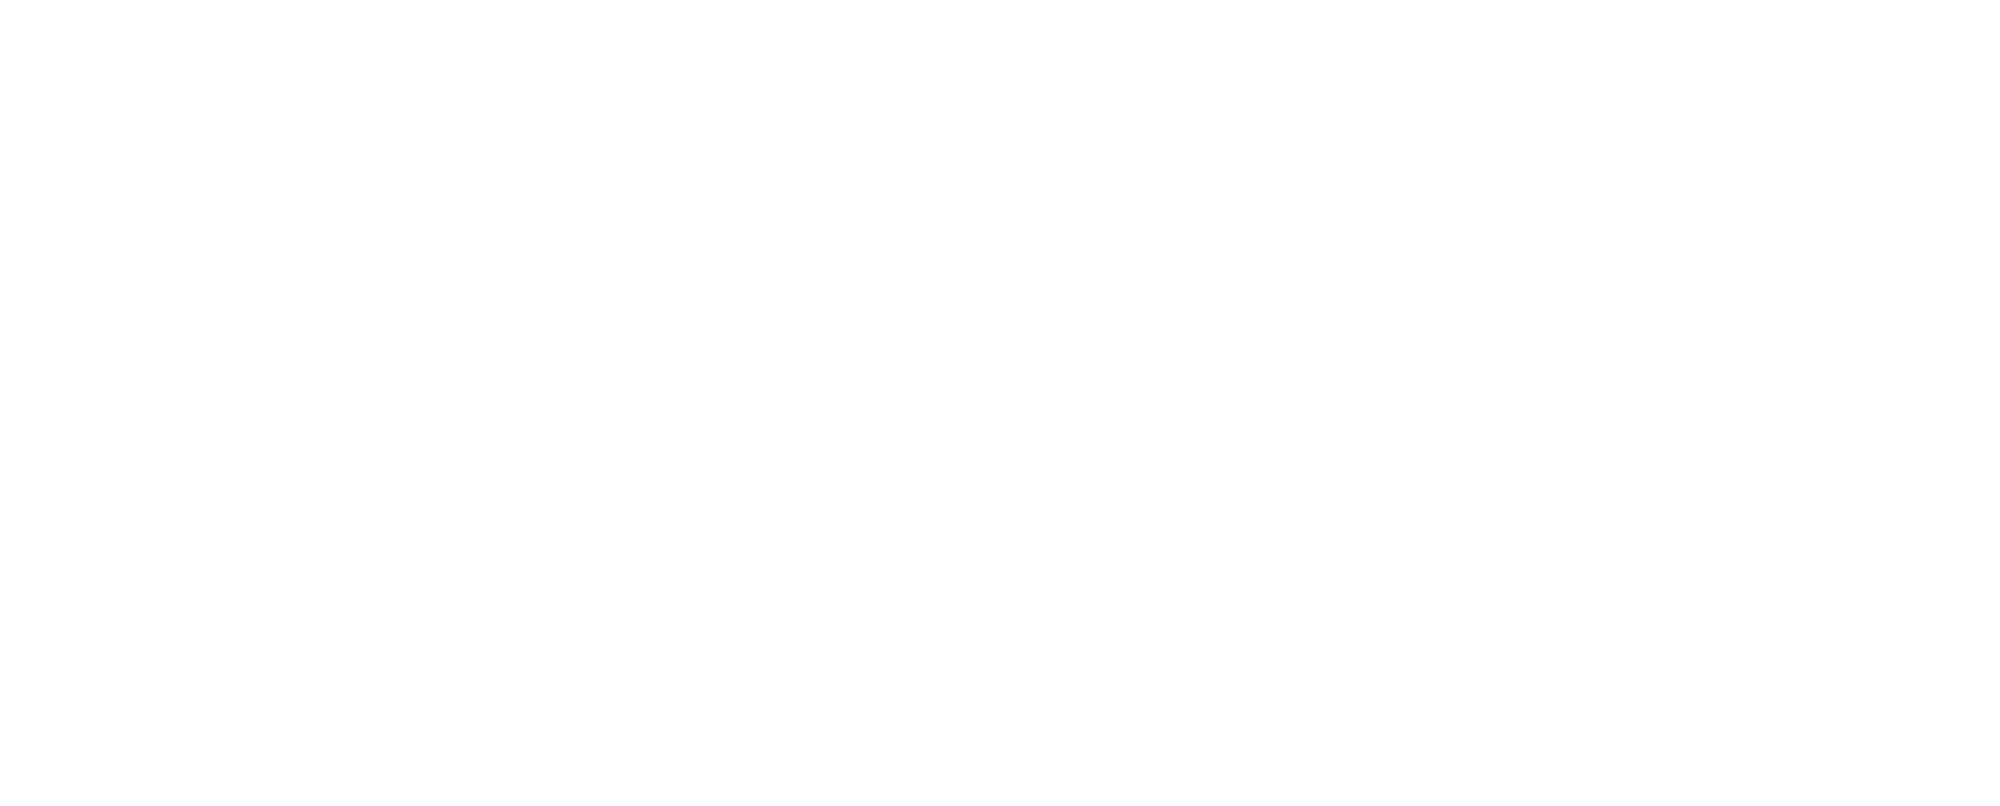 BuildingsIOT-logo-2020-white-2